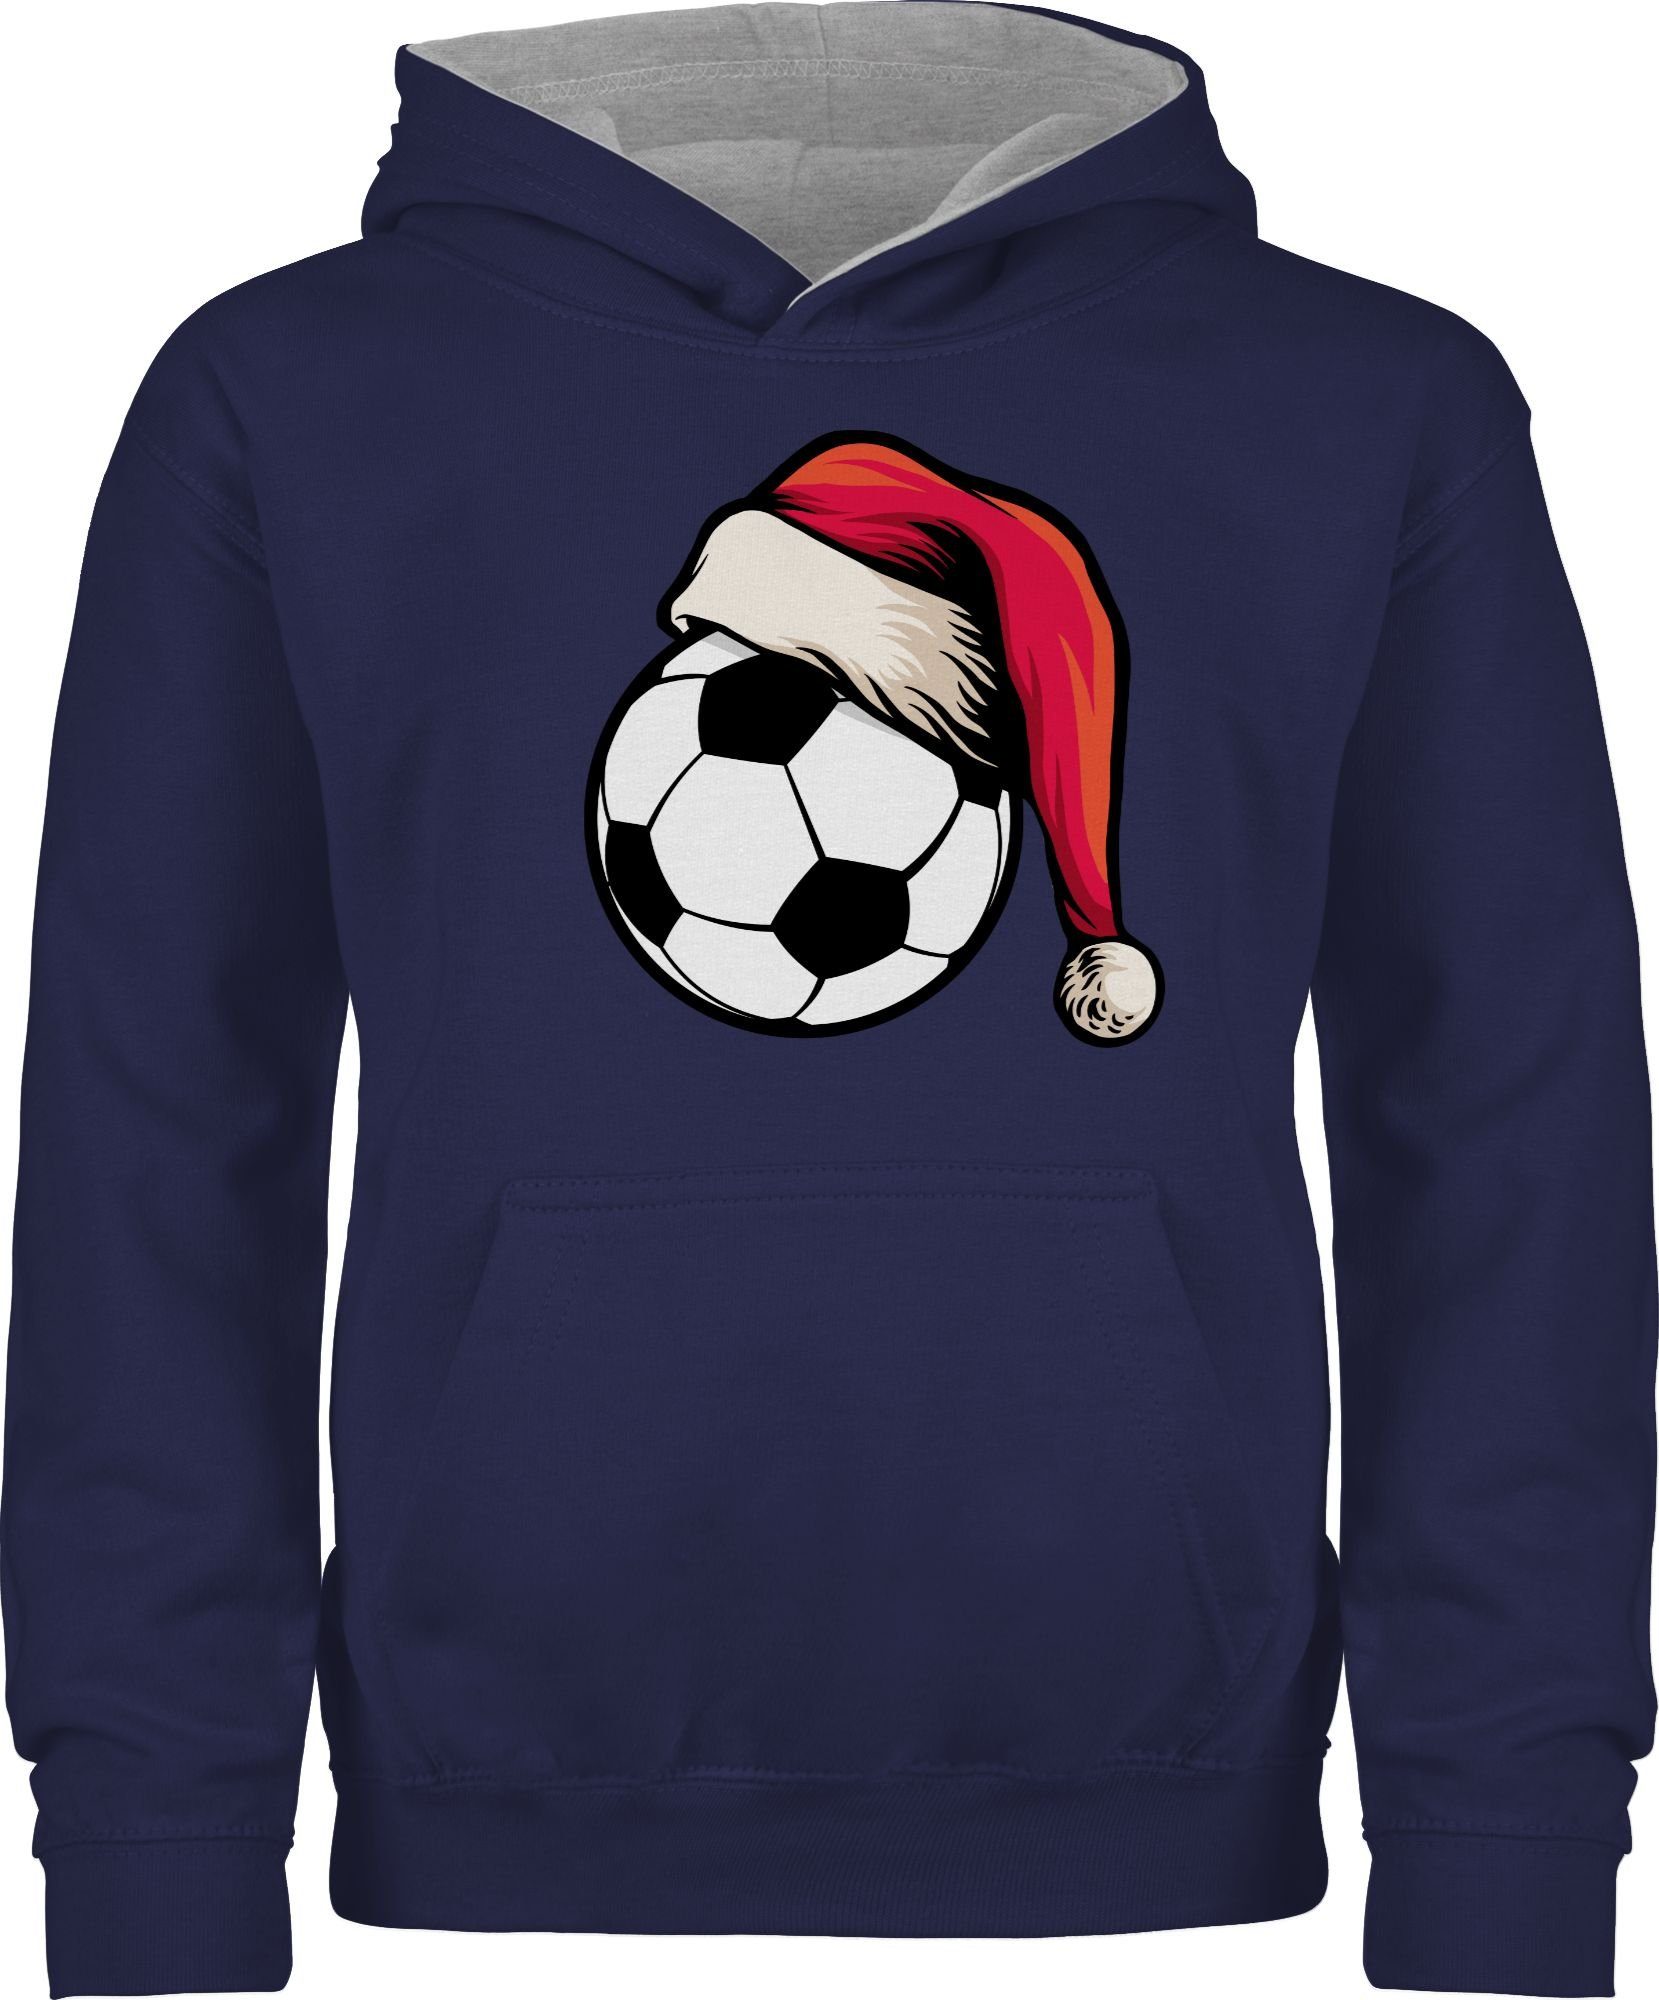 Shirtracer Hoodie Fußball mit Weihnachtsmütze Weihnachten Kleidung Kinder 3 Navy Blau/Grau meliert